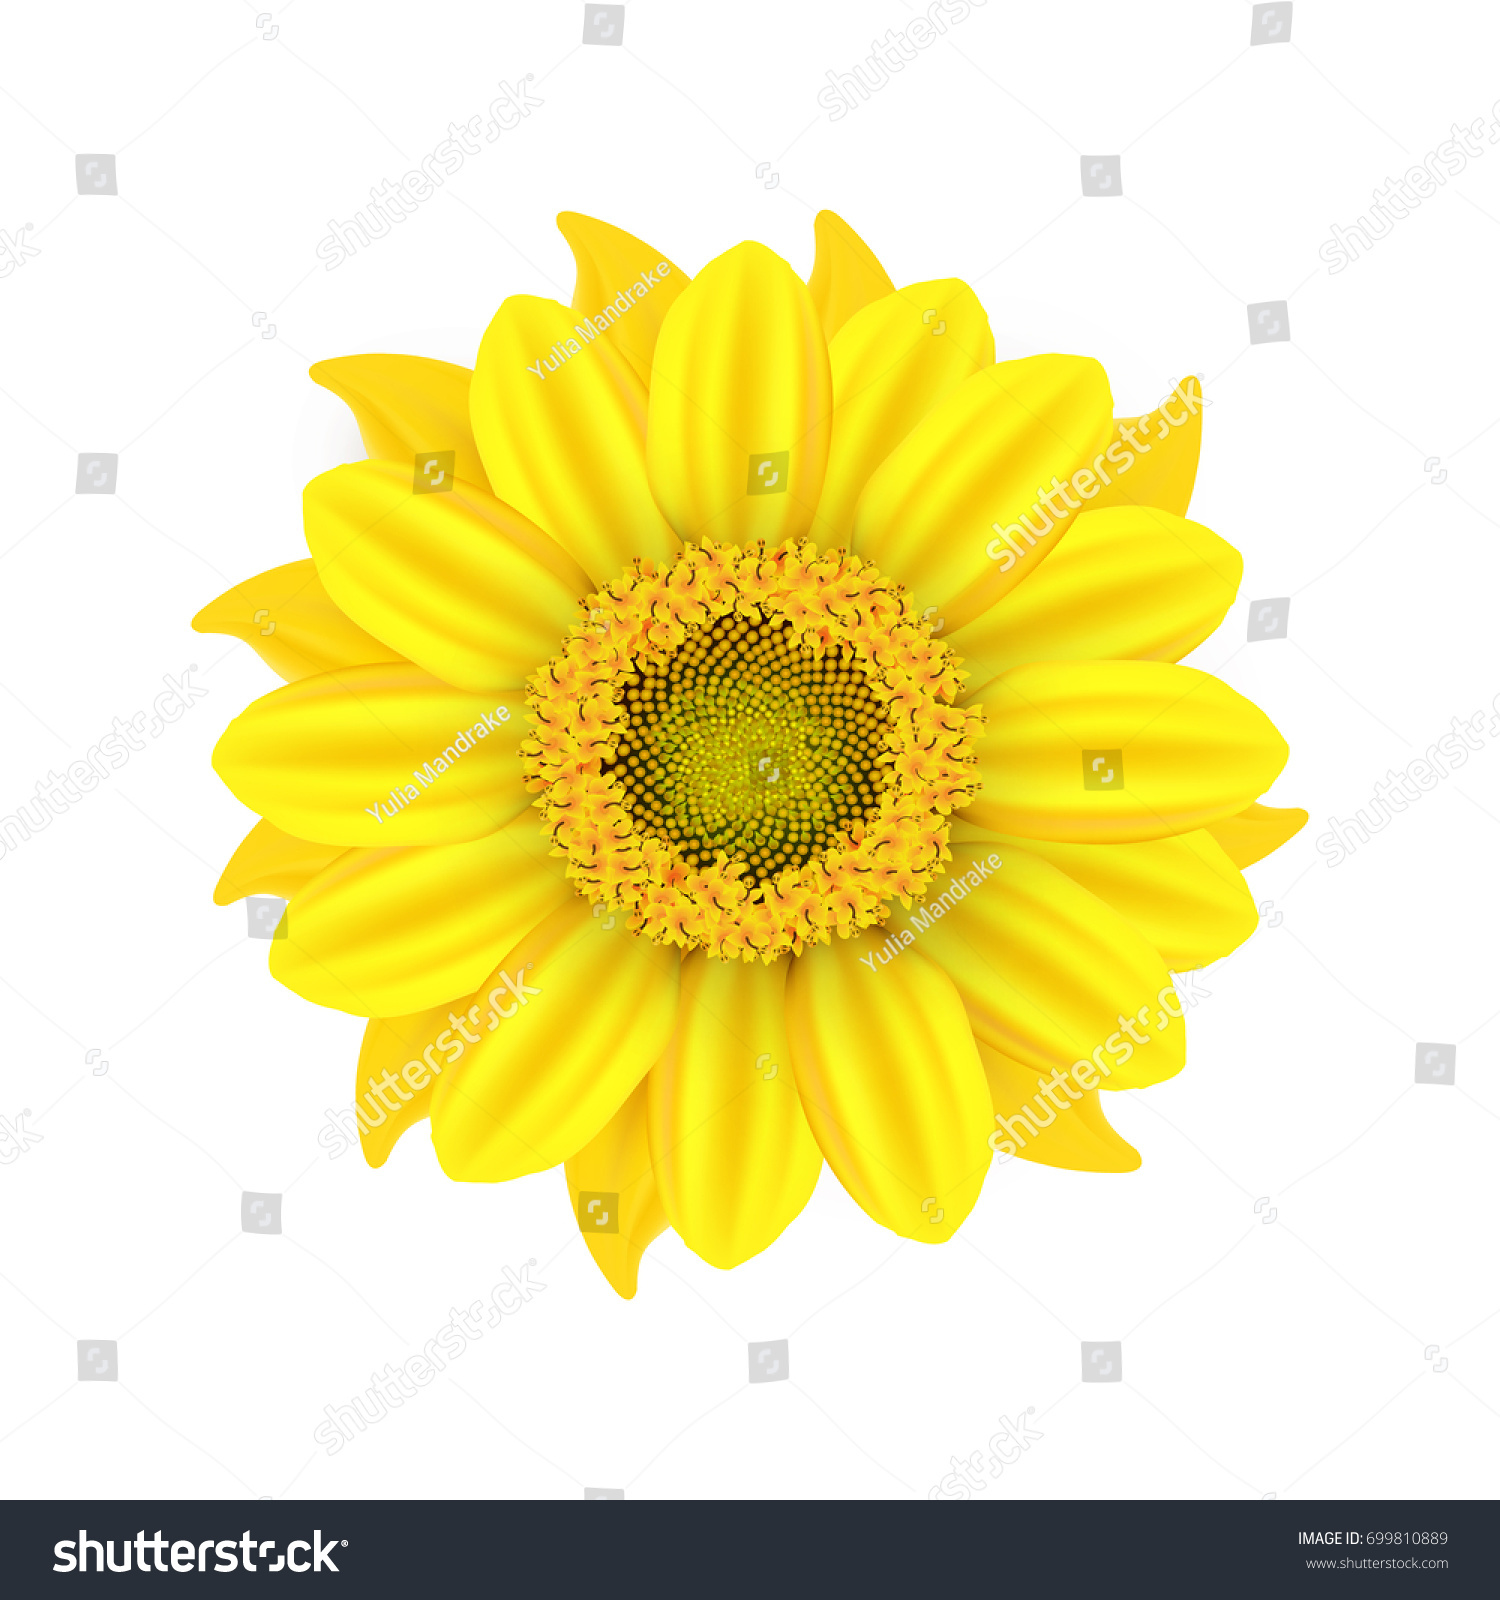 Vector Autumn Illustration Yellow Sunflower On Stock Vector ...